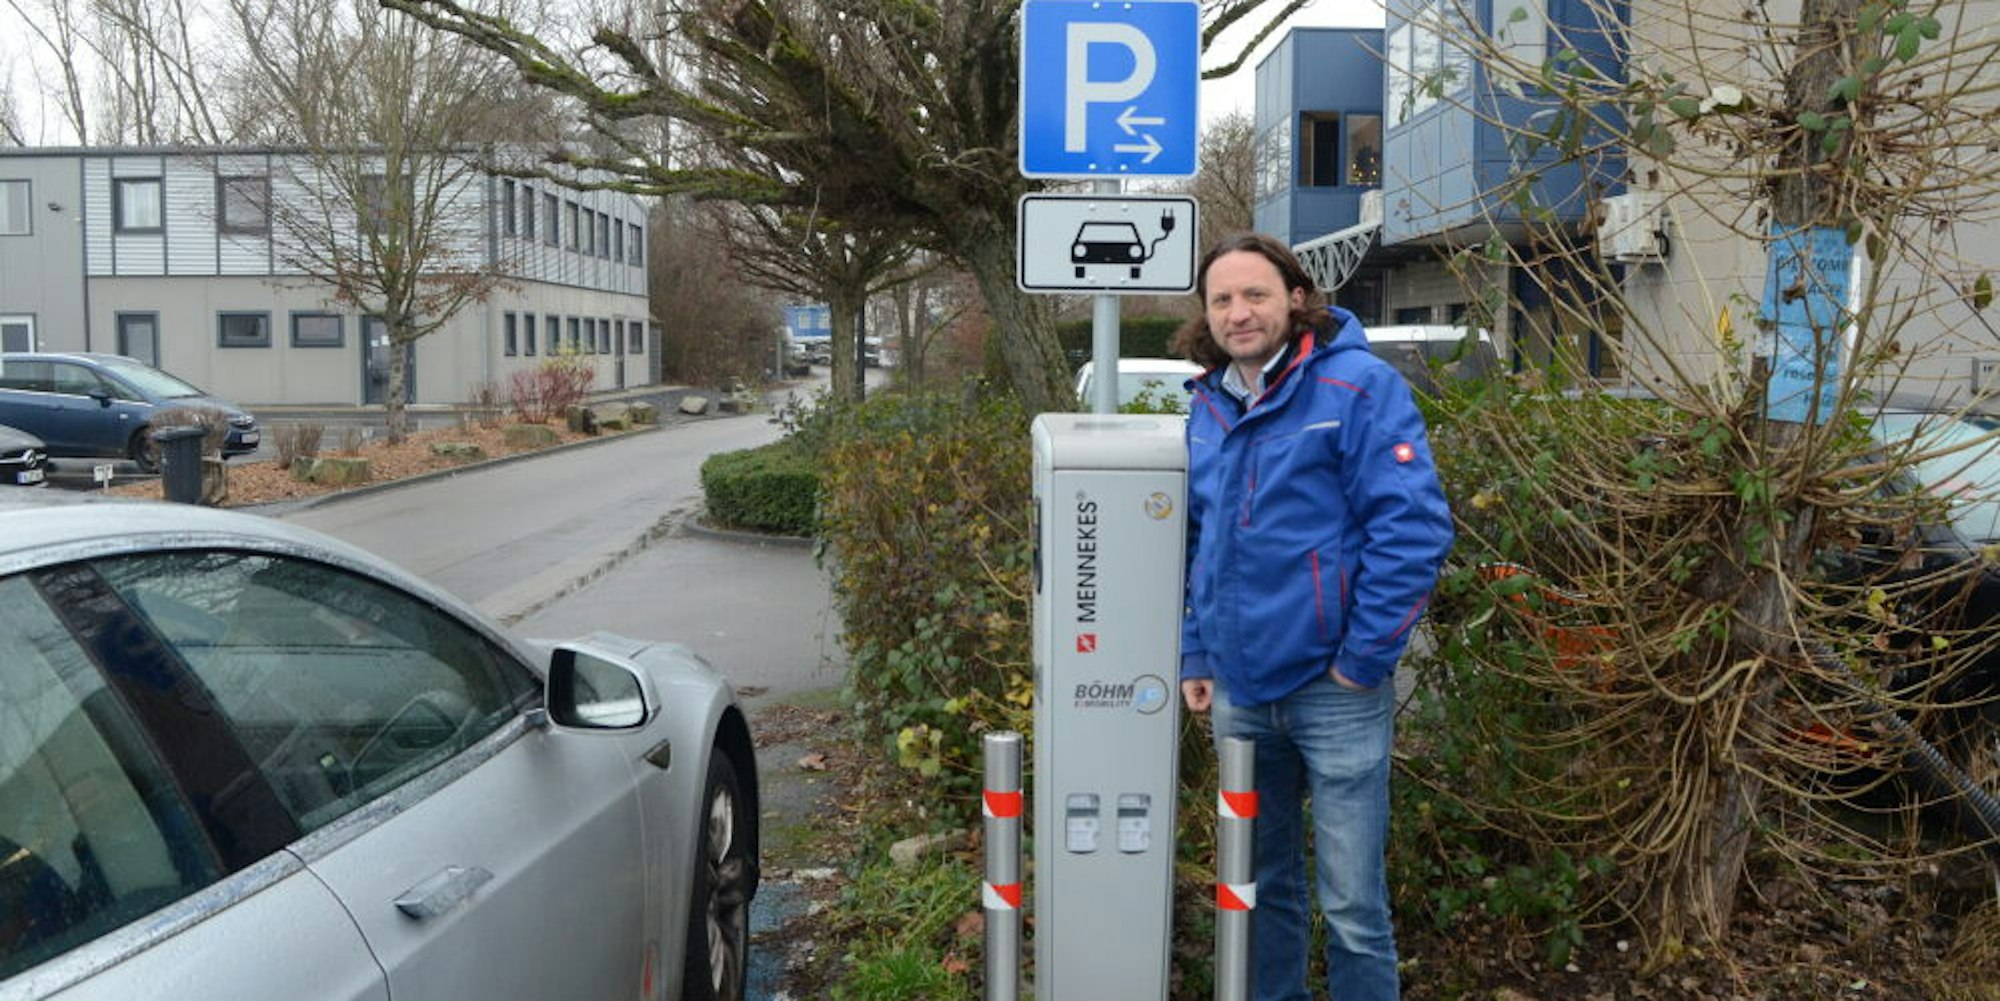 Firmenchef Martin Böhm installiert Ladestationen für Elektroautos in ganz Deutschland.